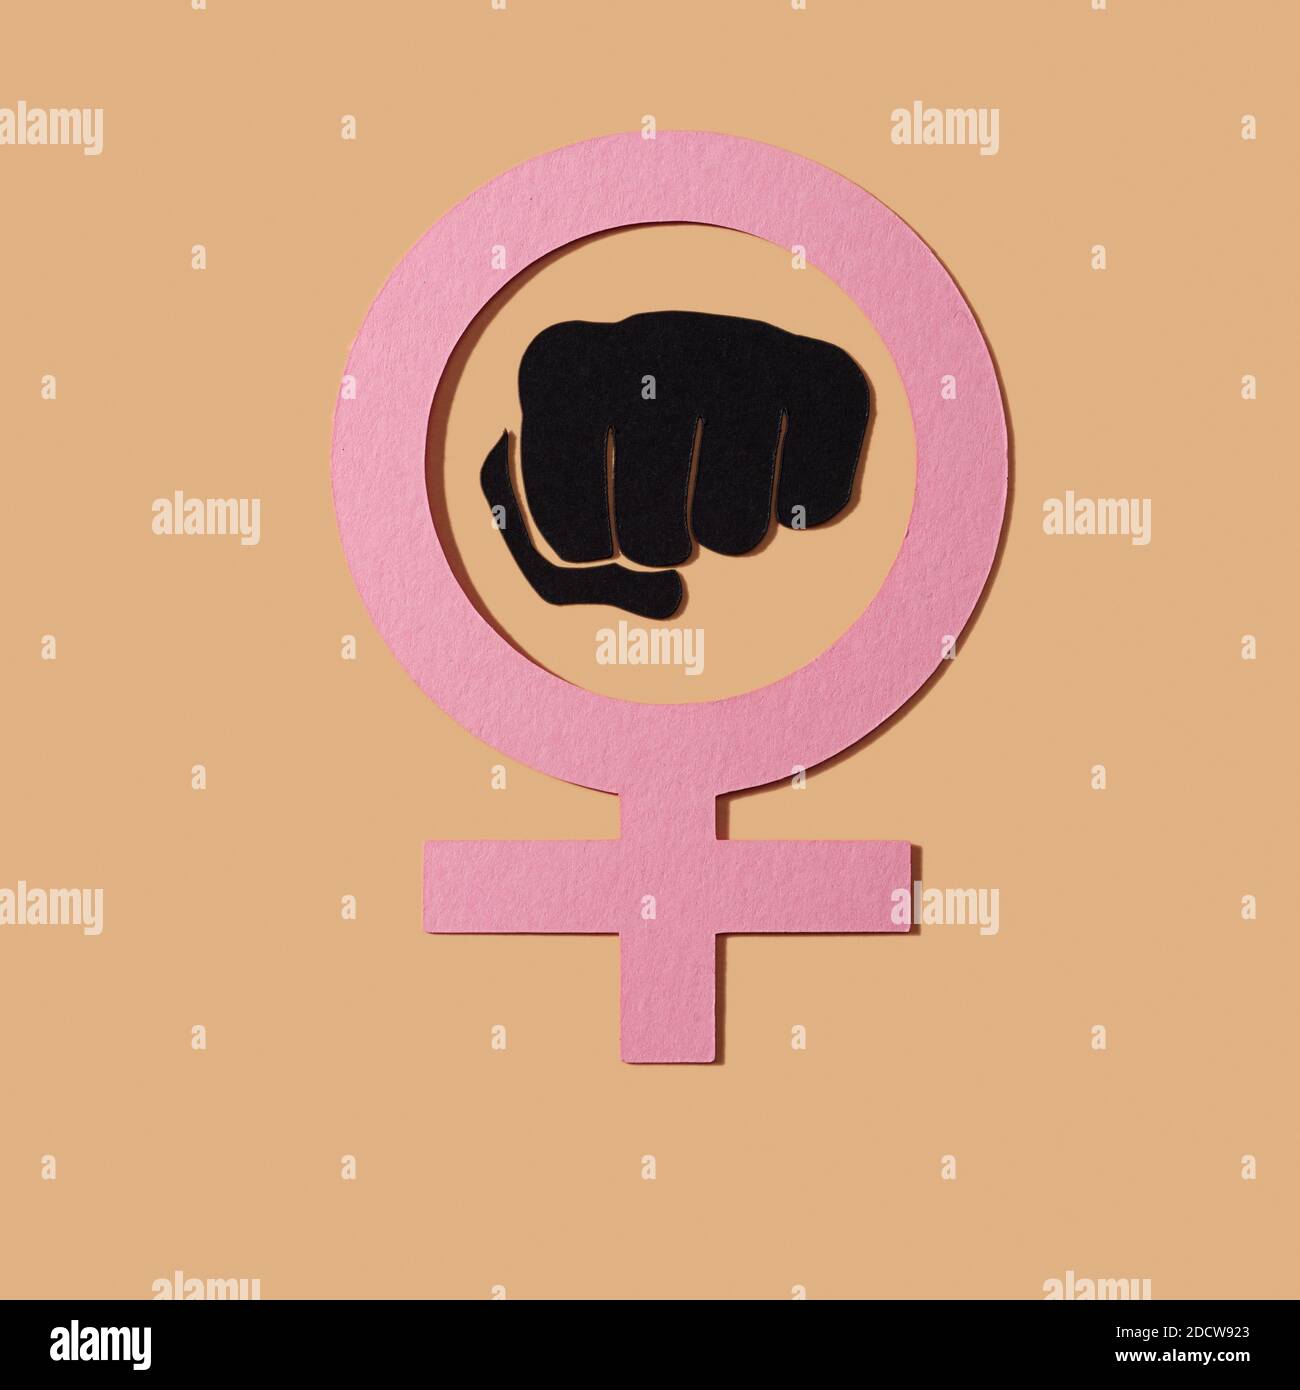 Das Frauen-Power-Symbol, eine erhobene Faust in einem weiblichen Geschlecht-Symbol, mit Ausschnitten aus Papier in verschiedenen Farben auf einem lachsrosa Hintergrund gemacht Stockfoto